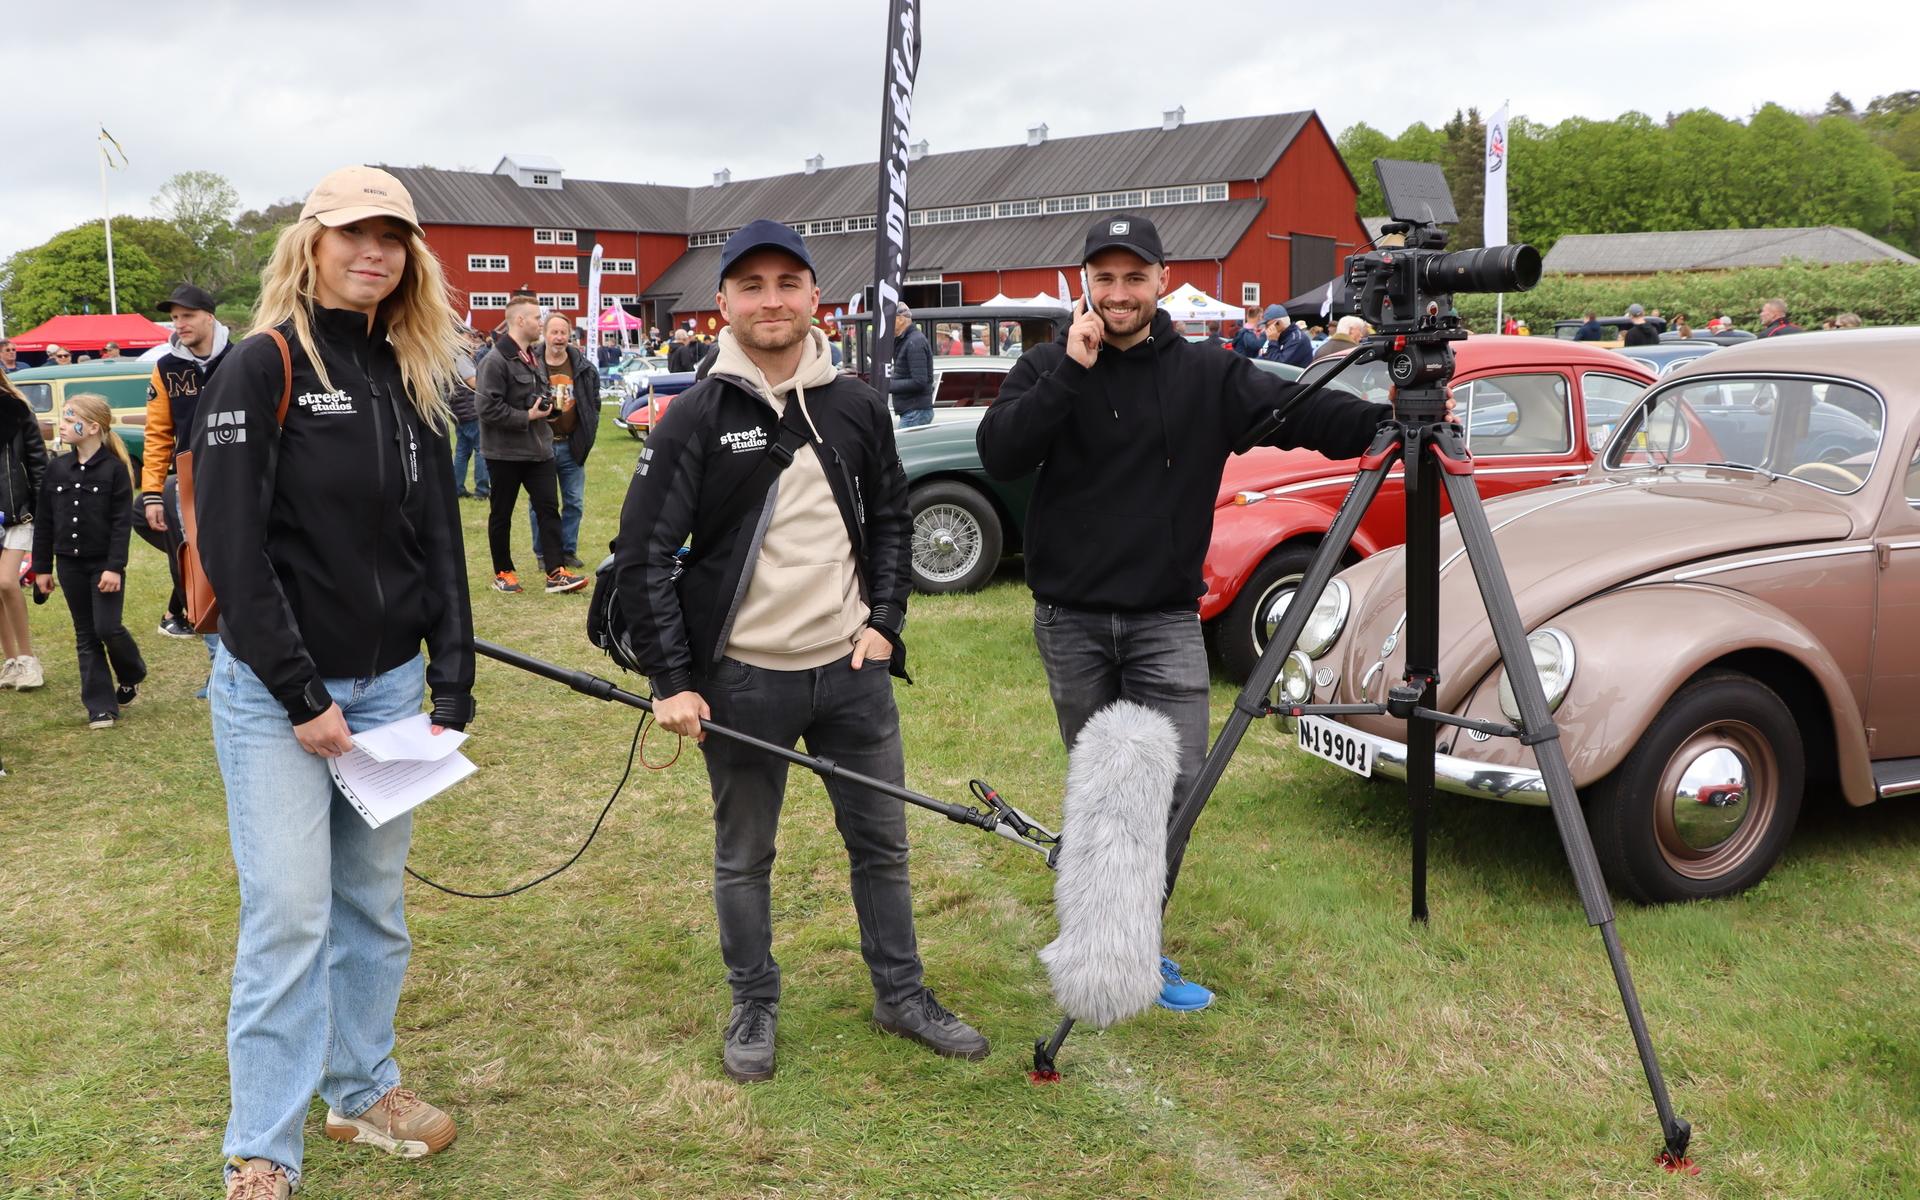 Linn Hansson, Nicklas Dahlgren och Filip Dahlgren från produktionsbolaget Street Studios var på plats för att dokumentera eventet. 